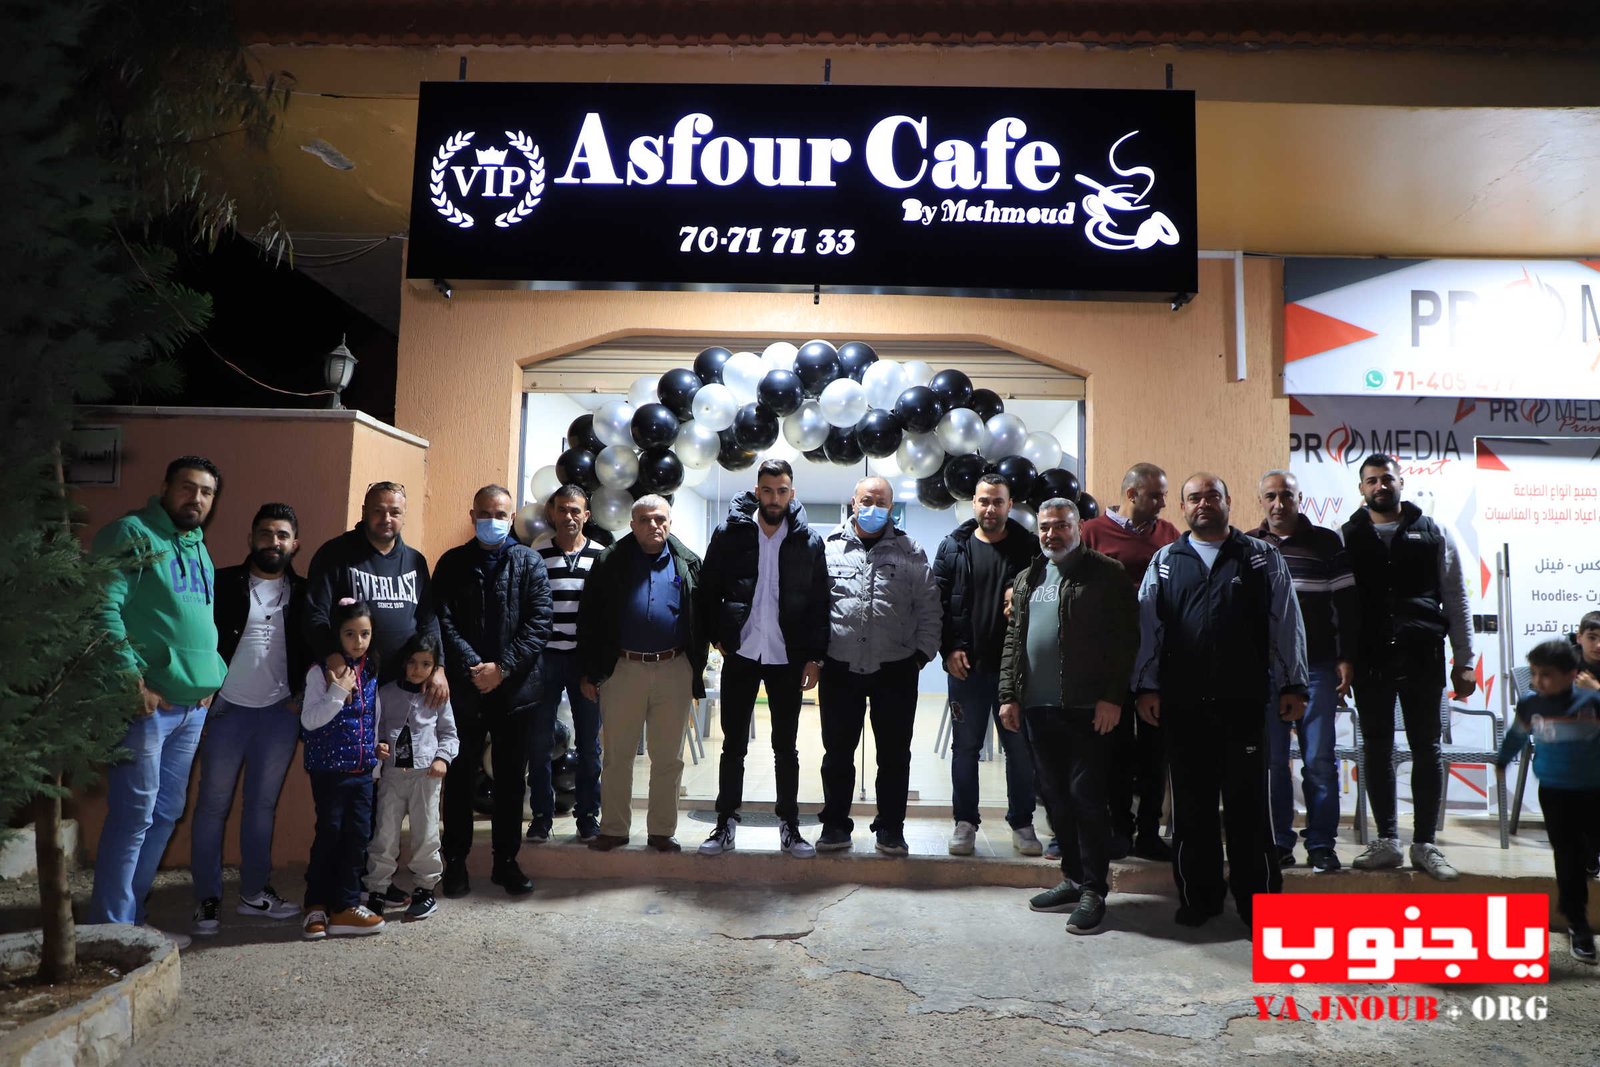 بعونه تعالى تم إفتتاح asfour cafe (vip) في بلدة طيردبا الجنوبية 